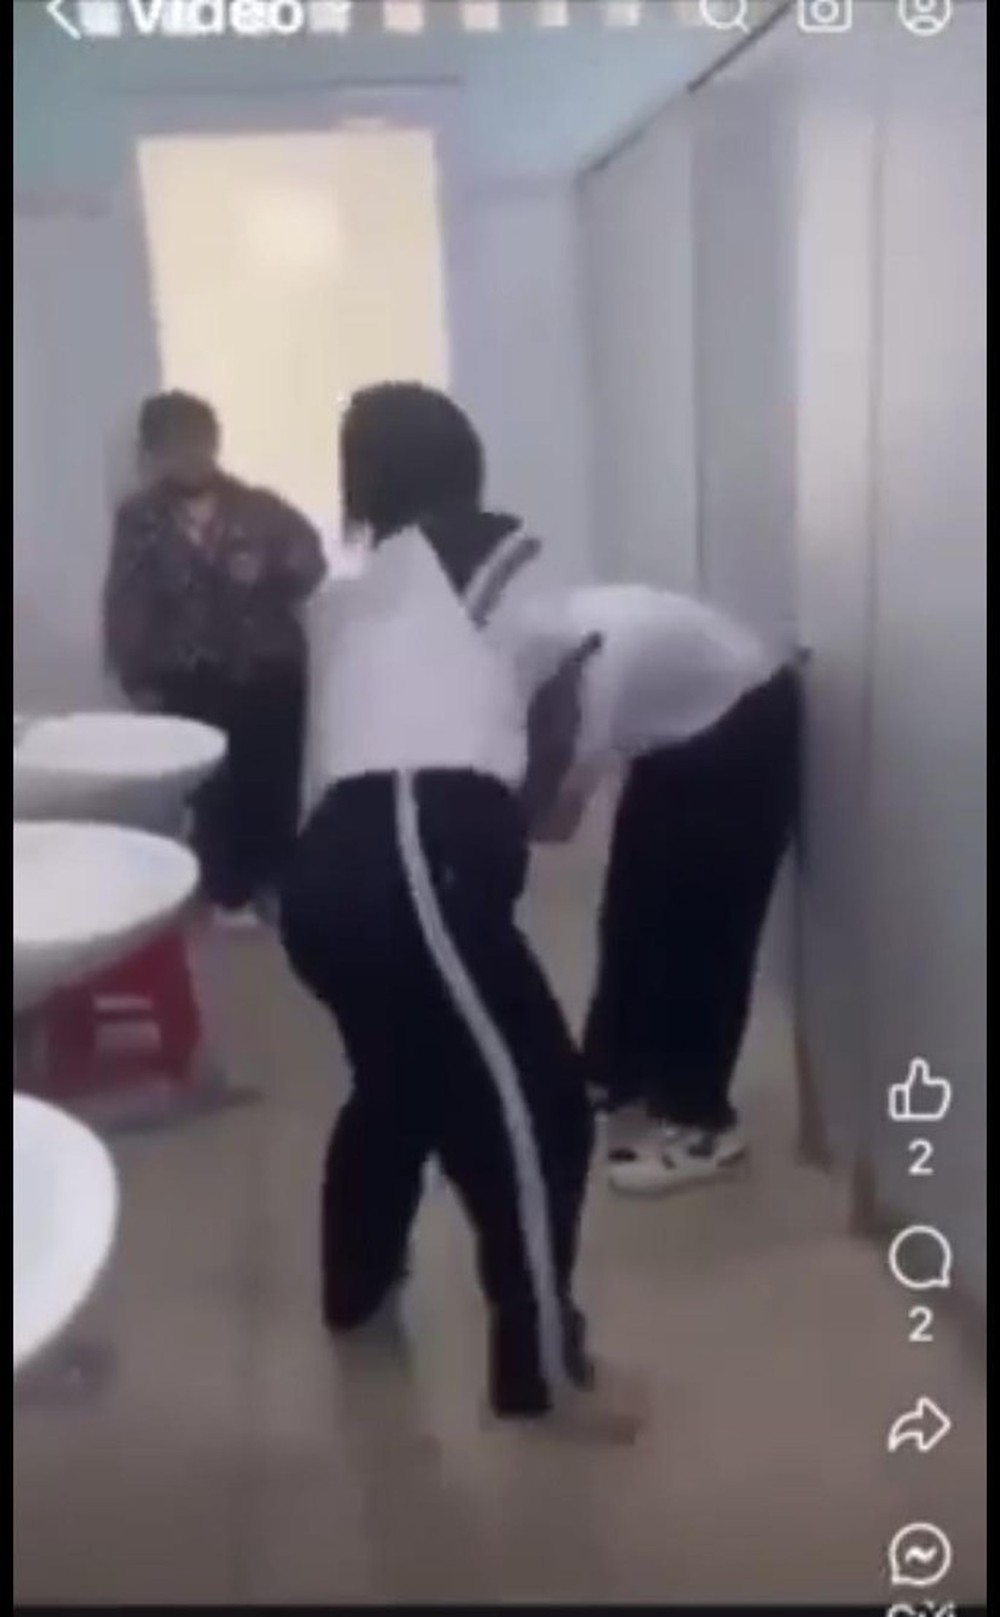 Lại xuất hiện clip nữ sinh bị nhóm bạn đánh túi bụi trong nhà vệ sinh trường học-1